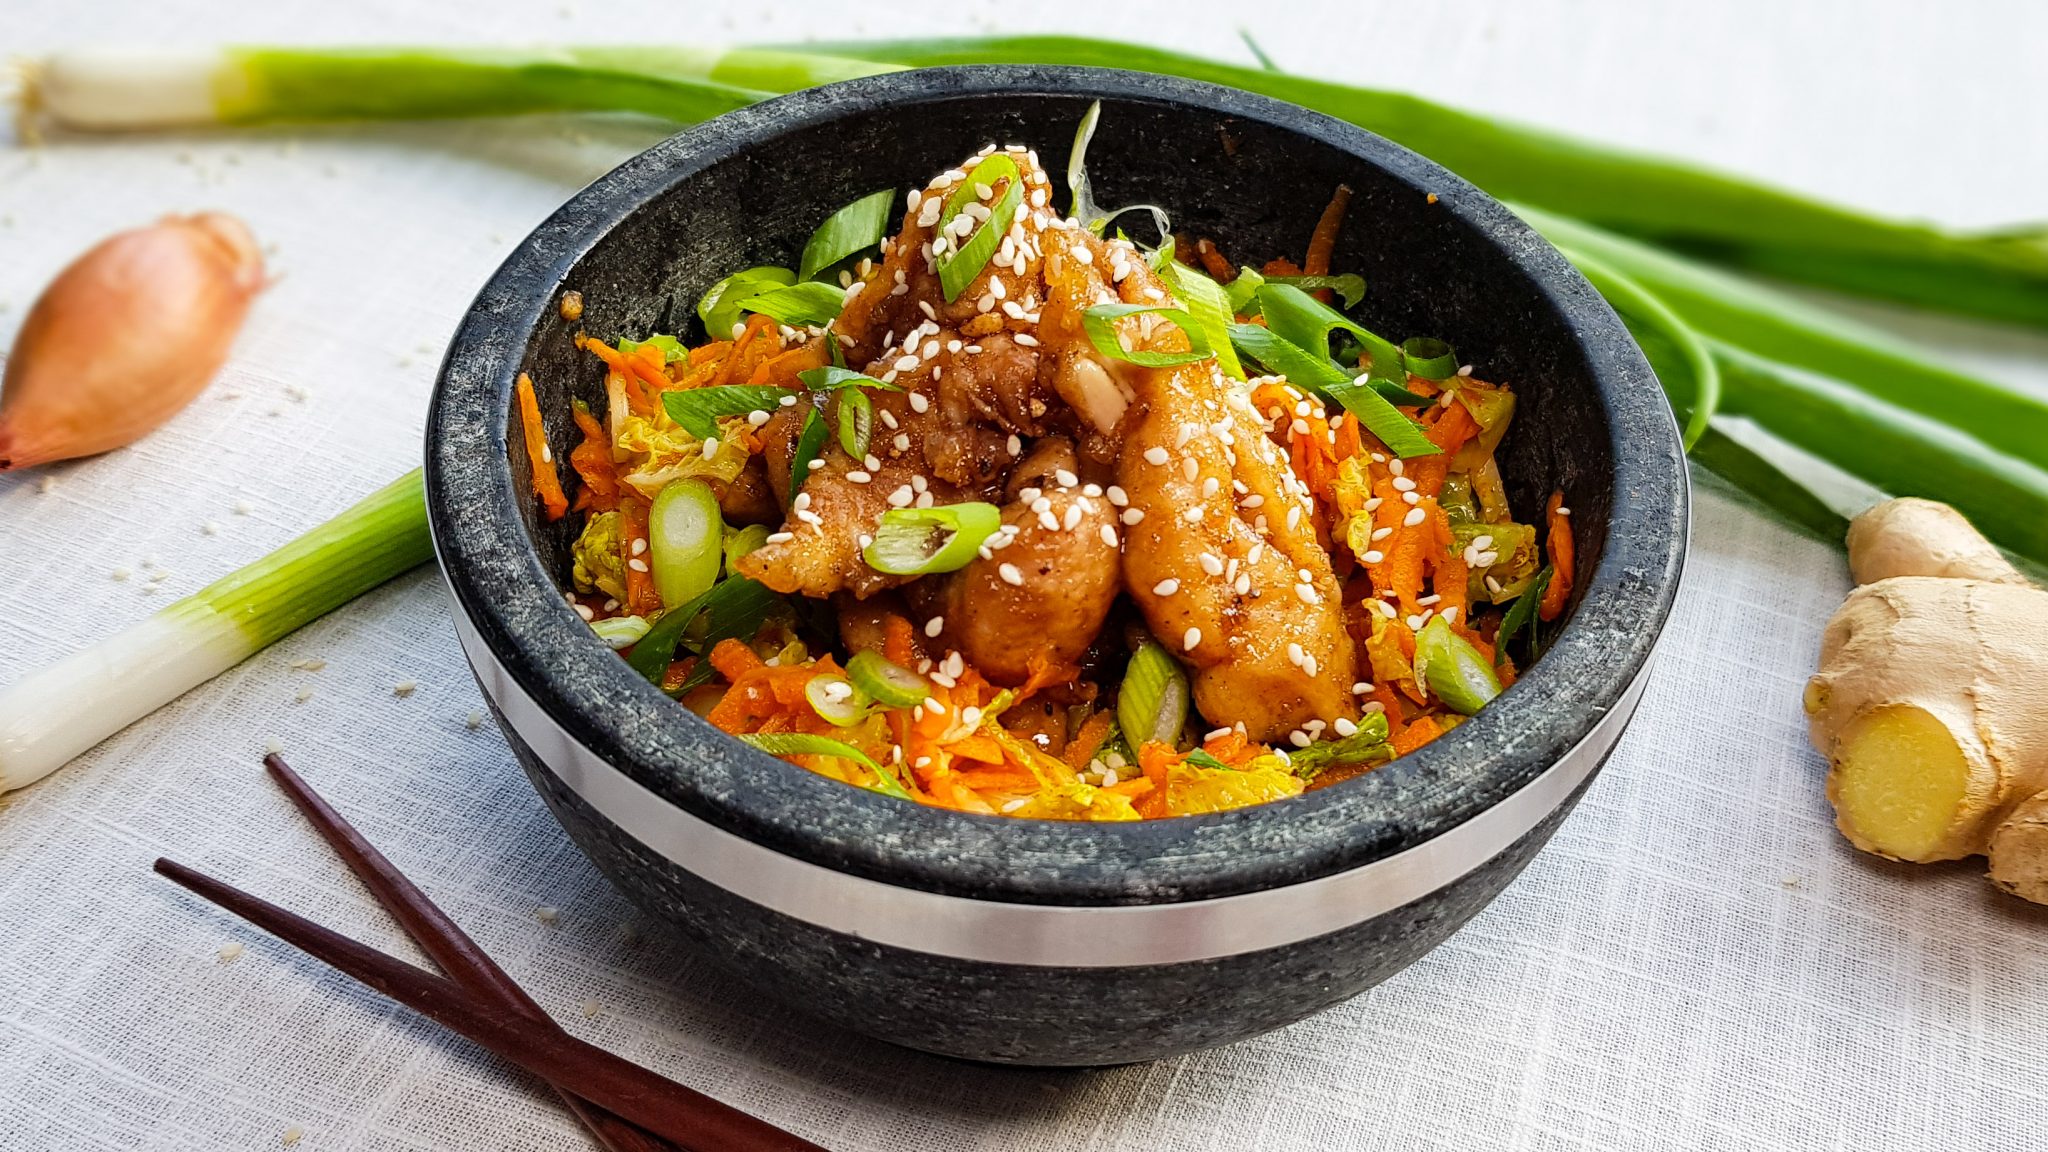 Uitgelezene Kimchi salade met krokante kip | Evie kookt QN-48